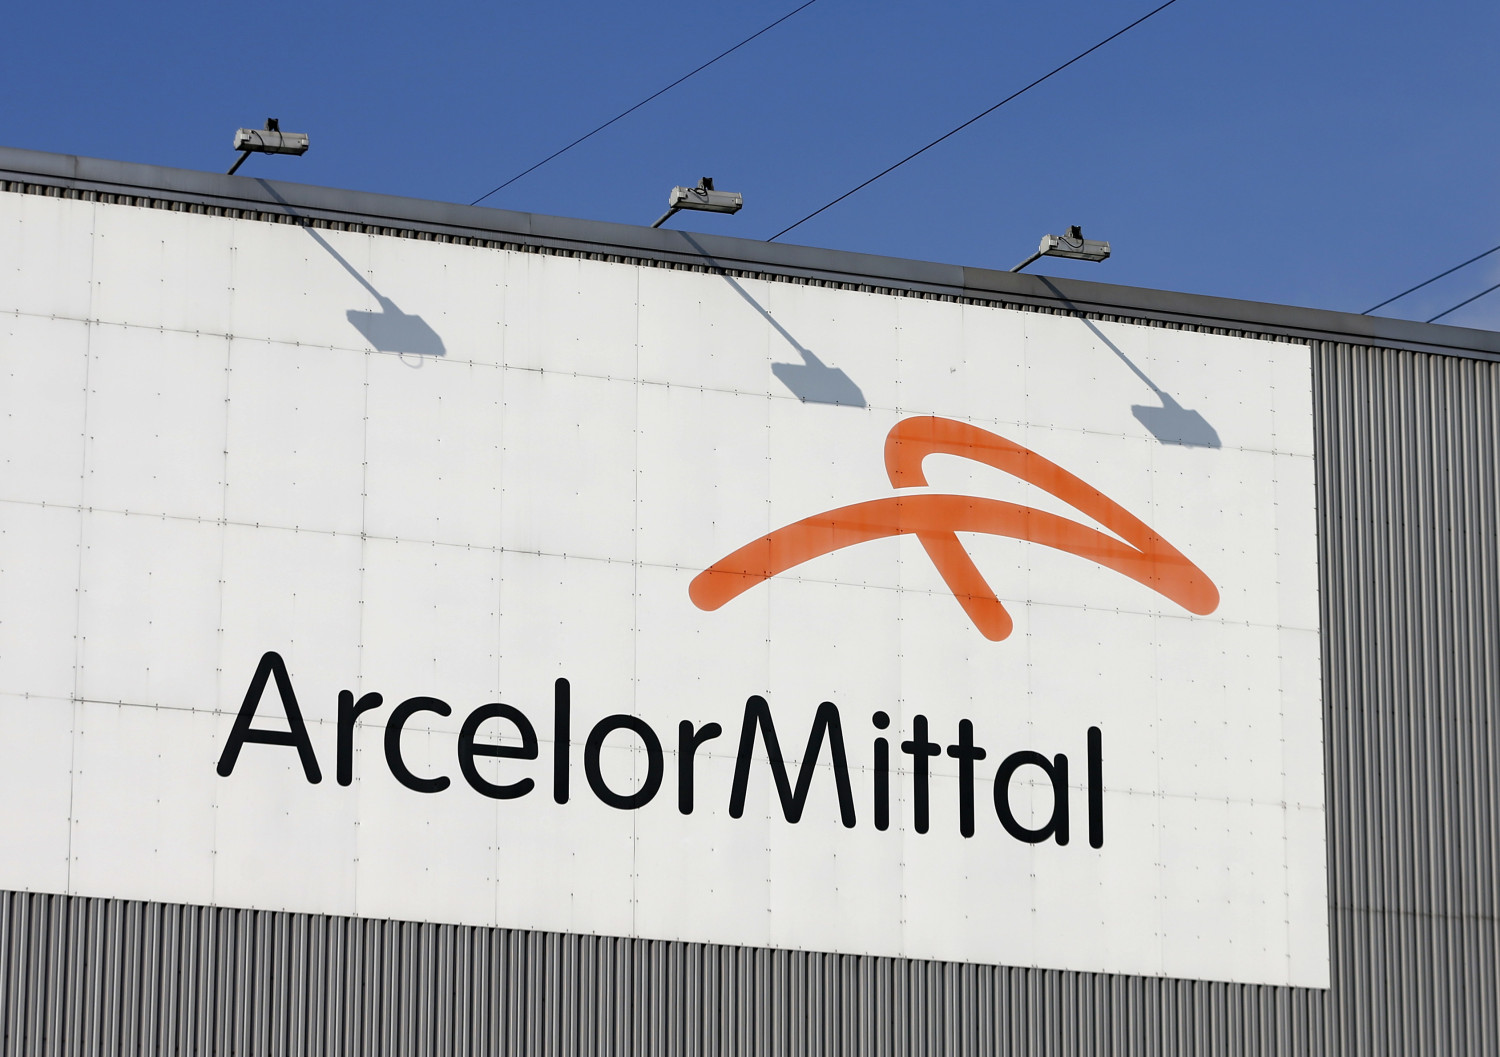 le logo de l usine siderurgique arcelormittal a seraing 